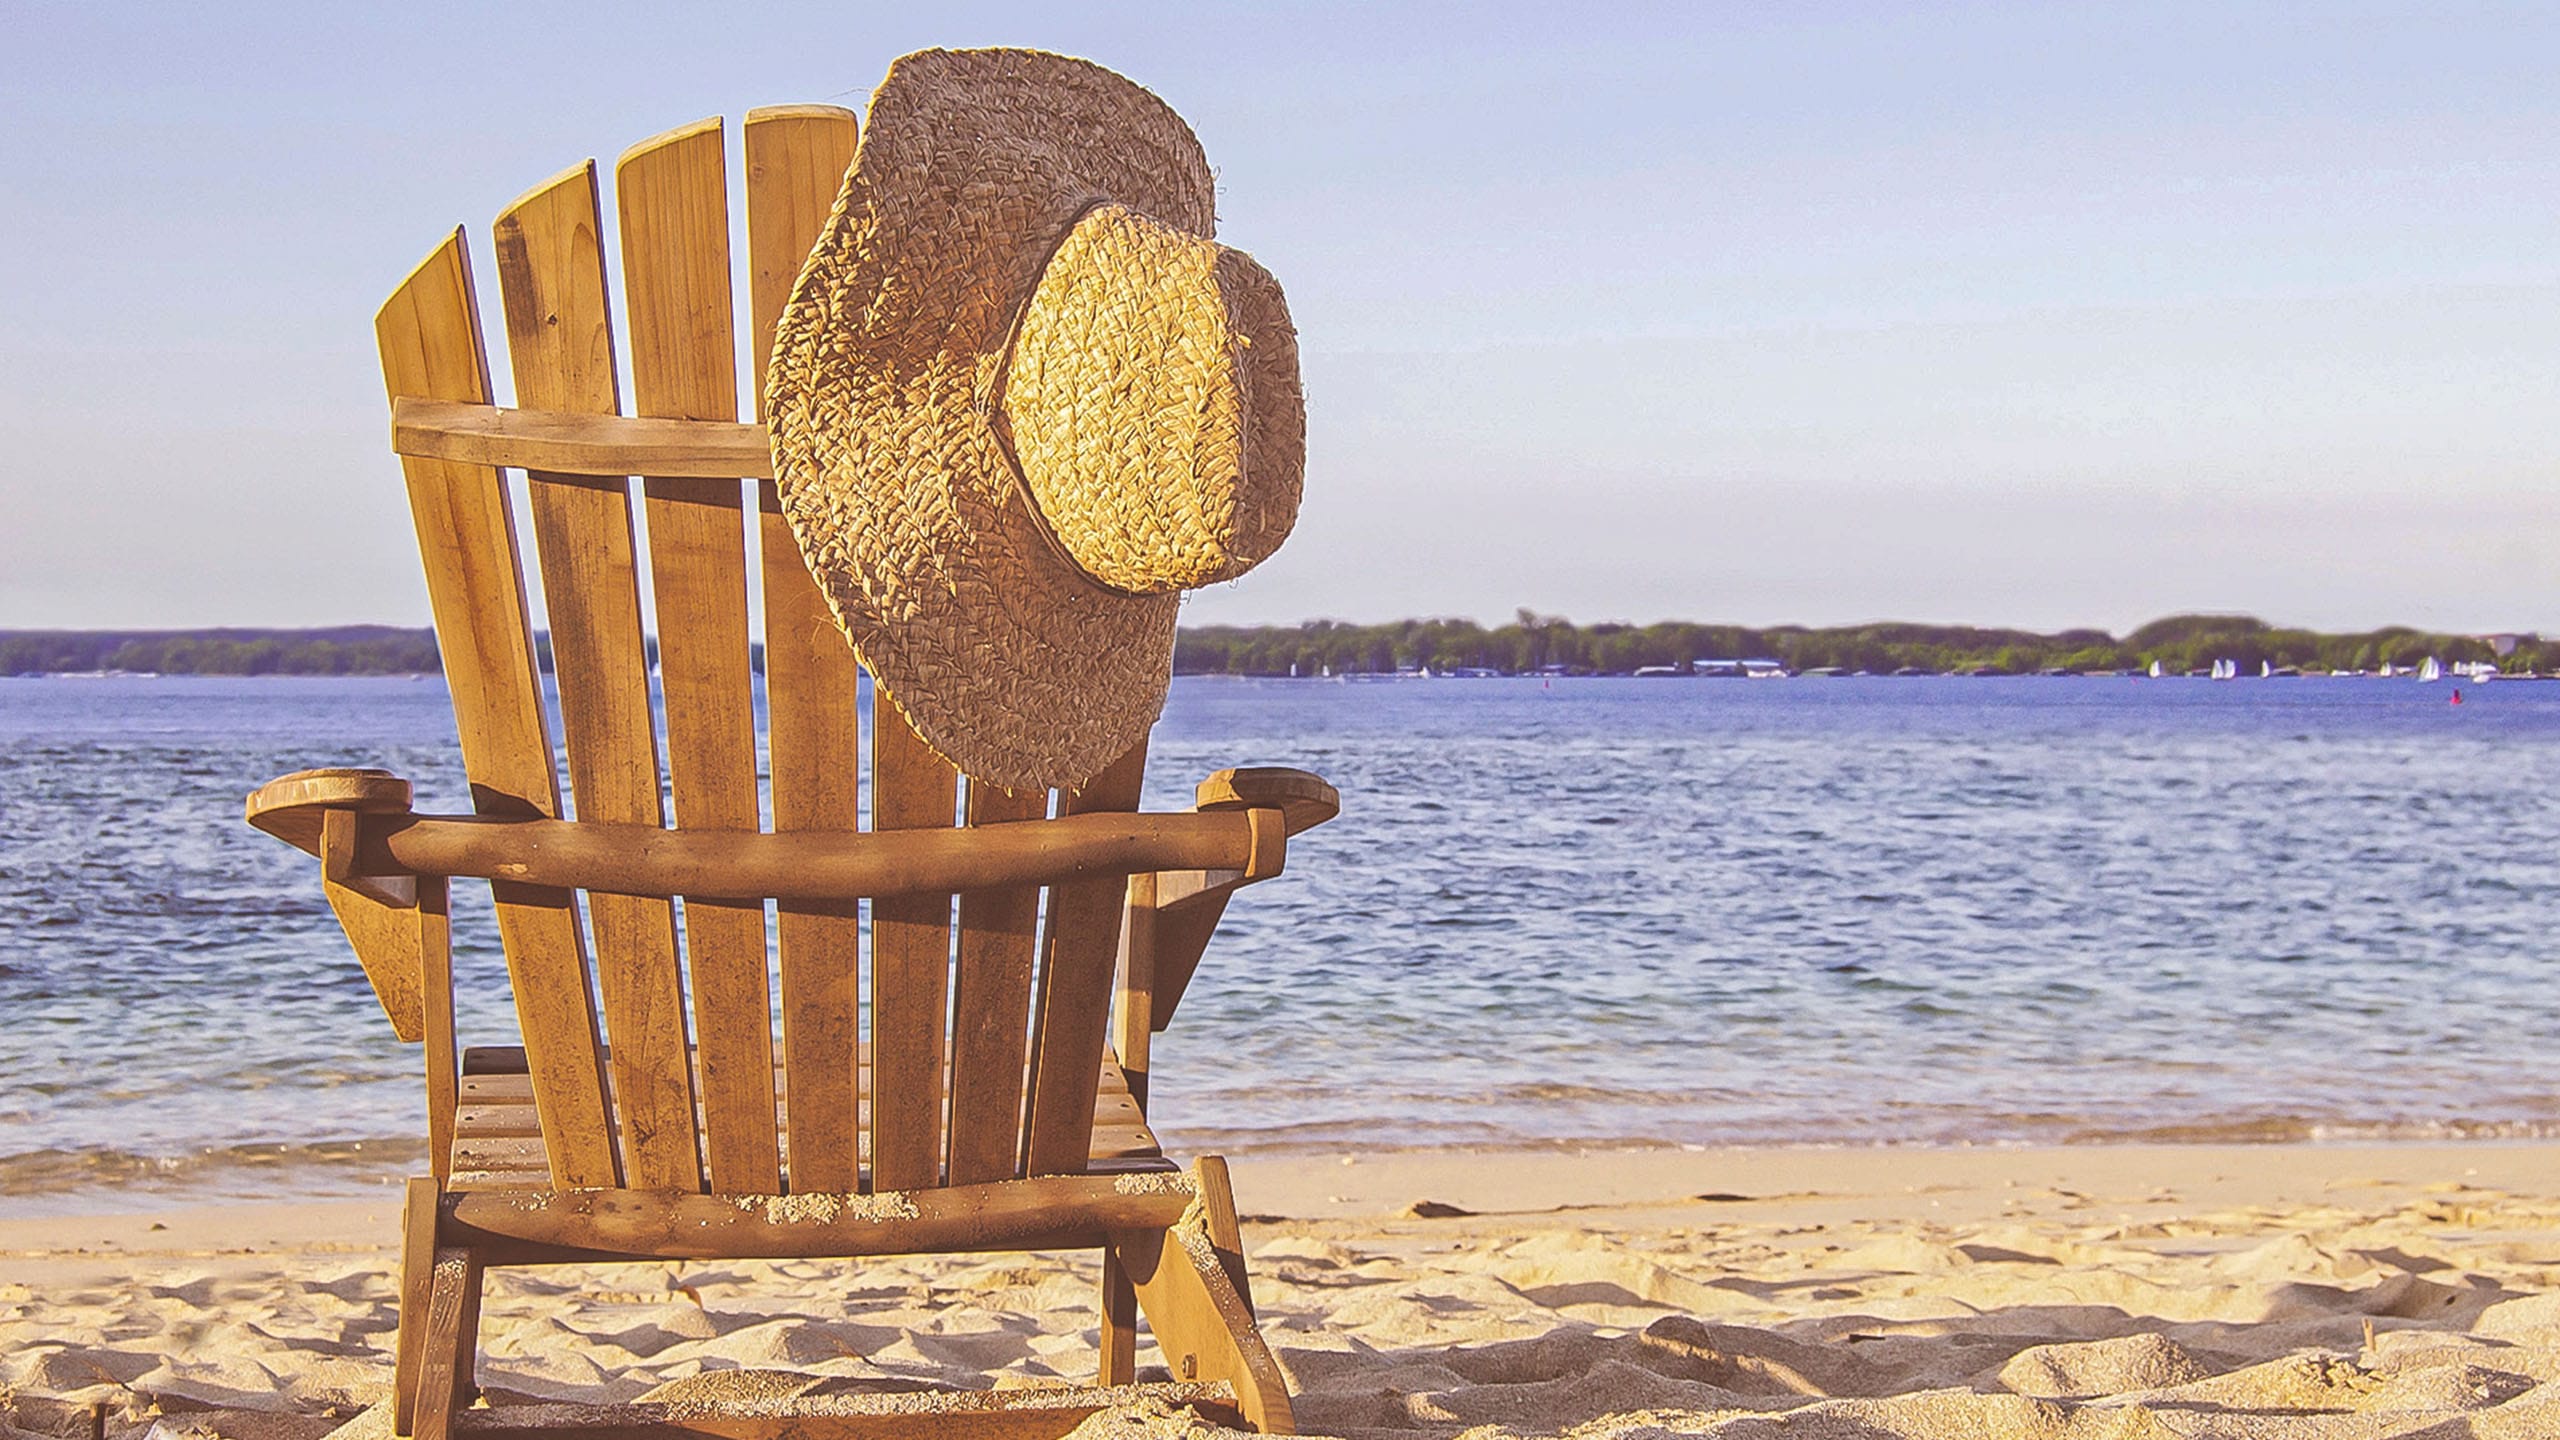 Ein Strandstuhl aus Holz am See Strand, auf dem ein Strohhut hängt.